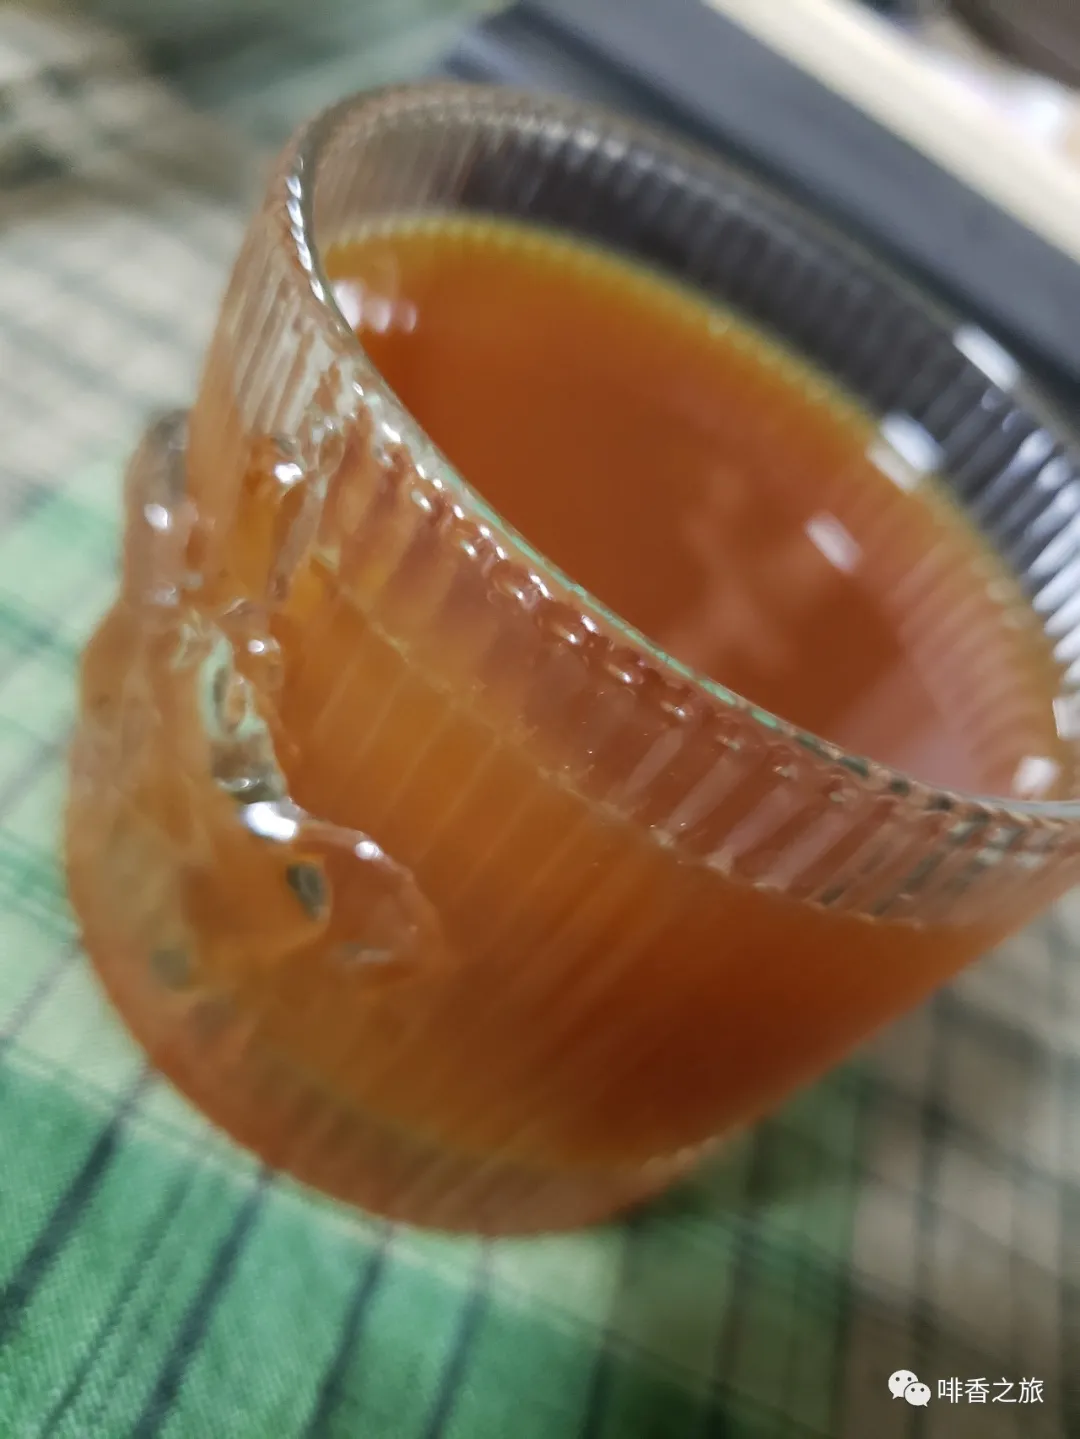 咖啡也能挺“养生”：自制一杯红枣糙米浆咖啡